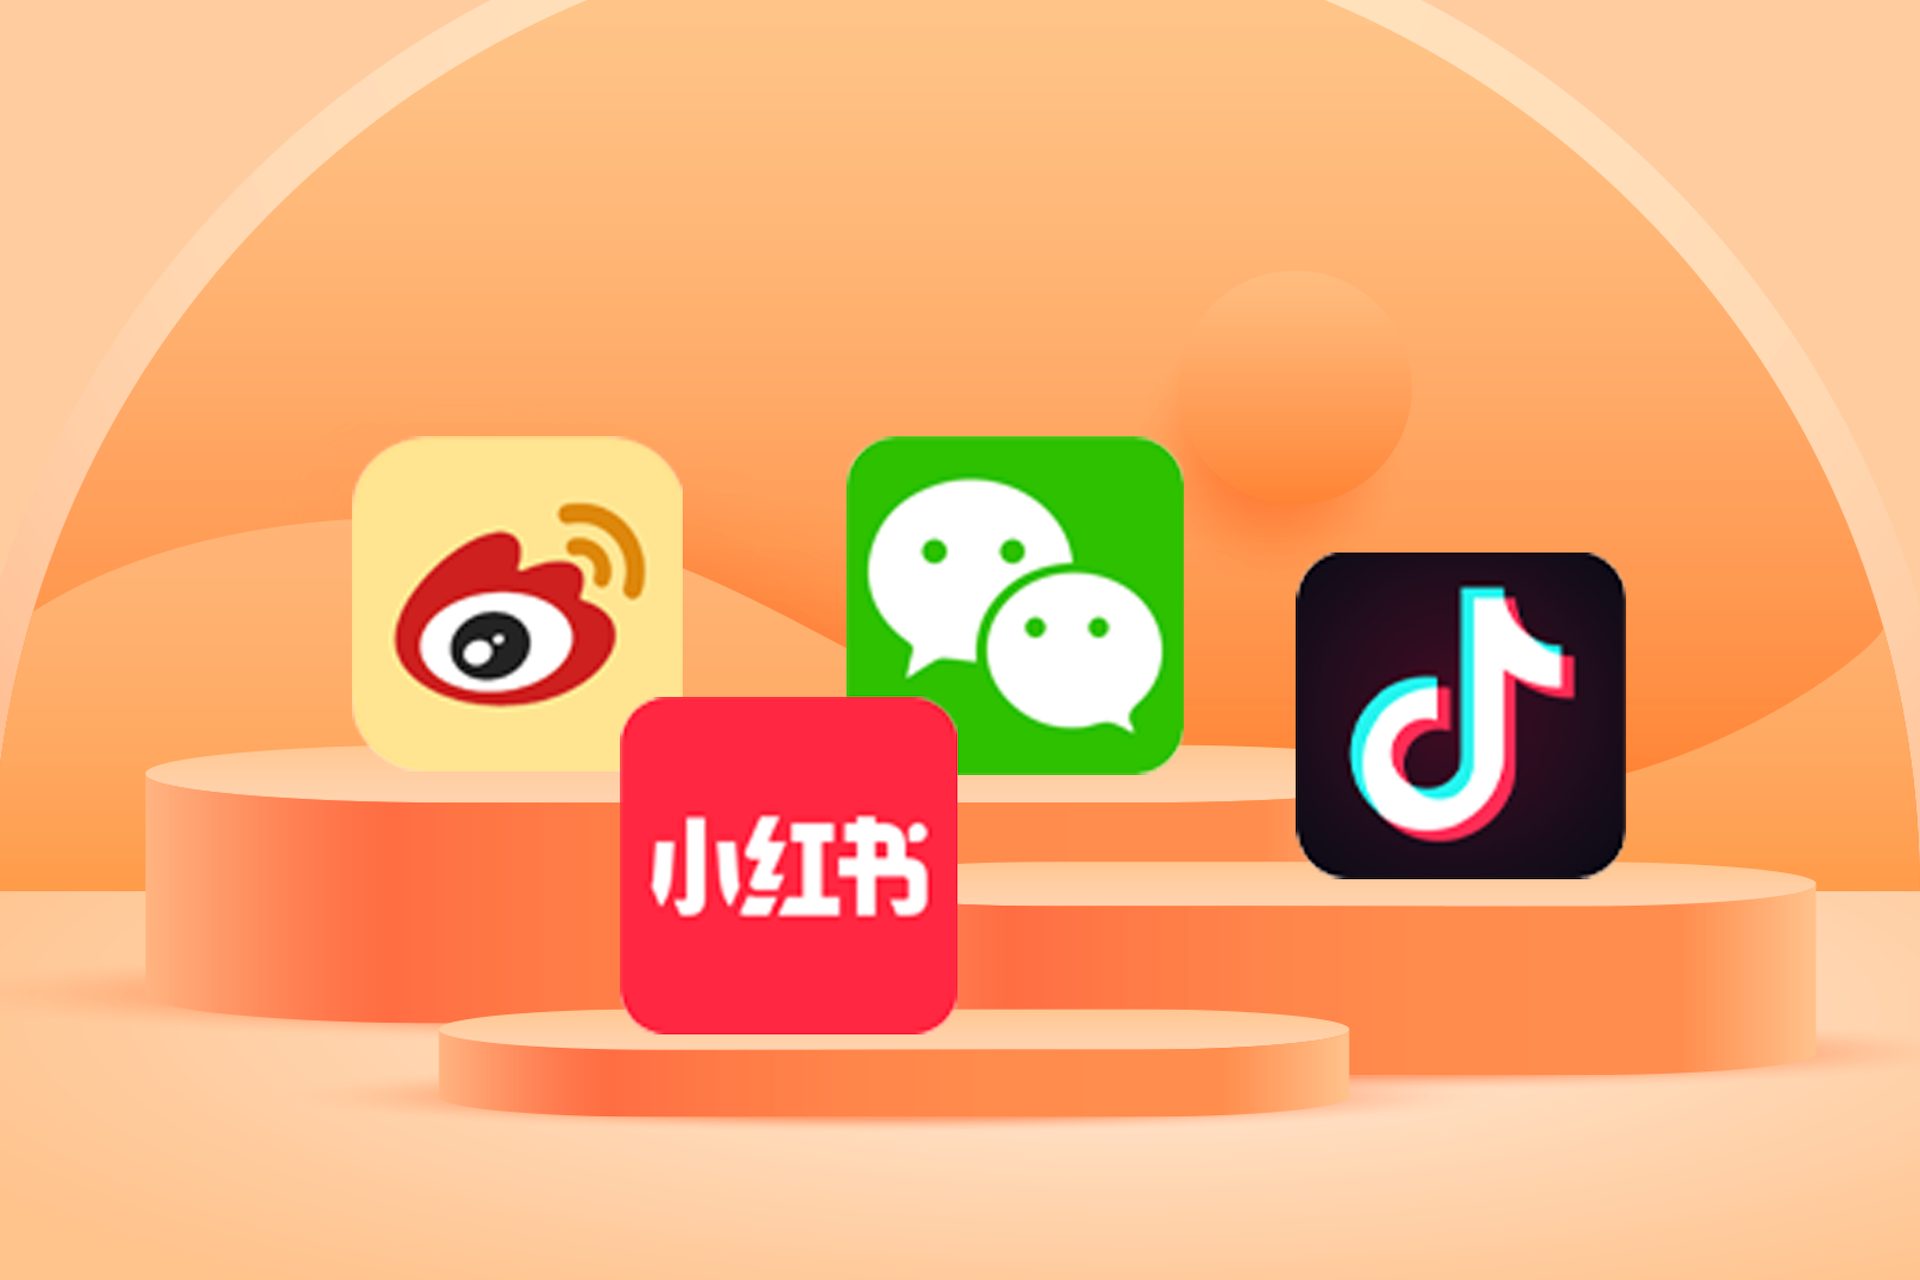 Image of Chinese social media apps on orange podium